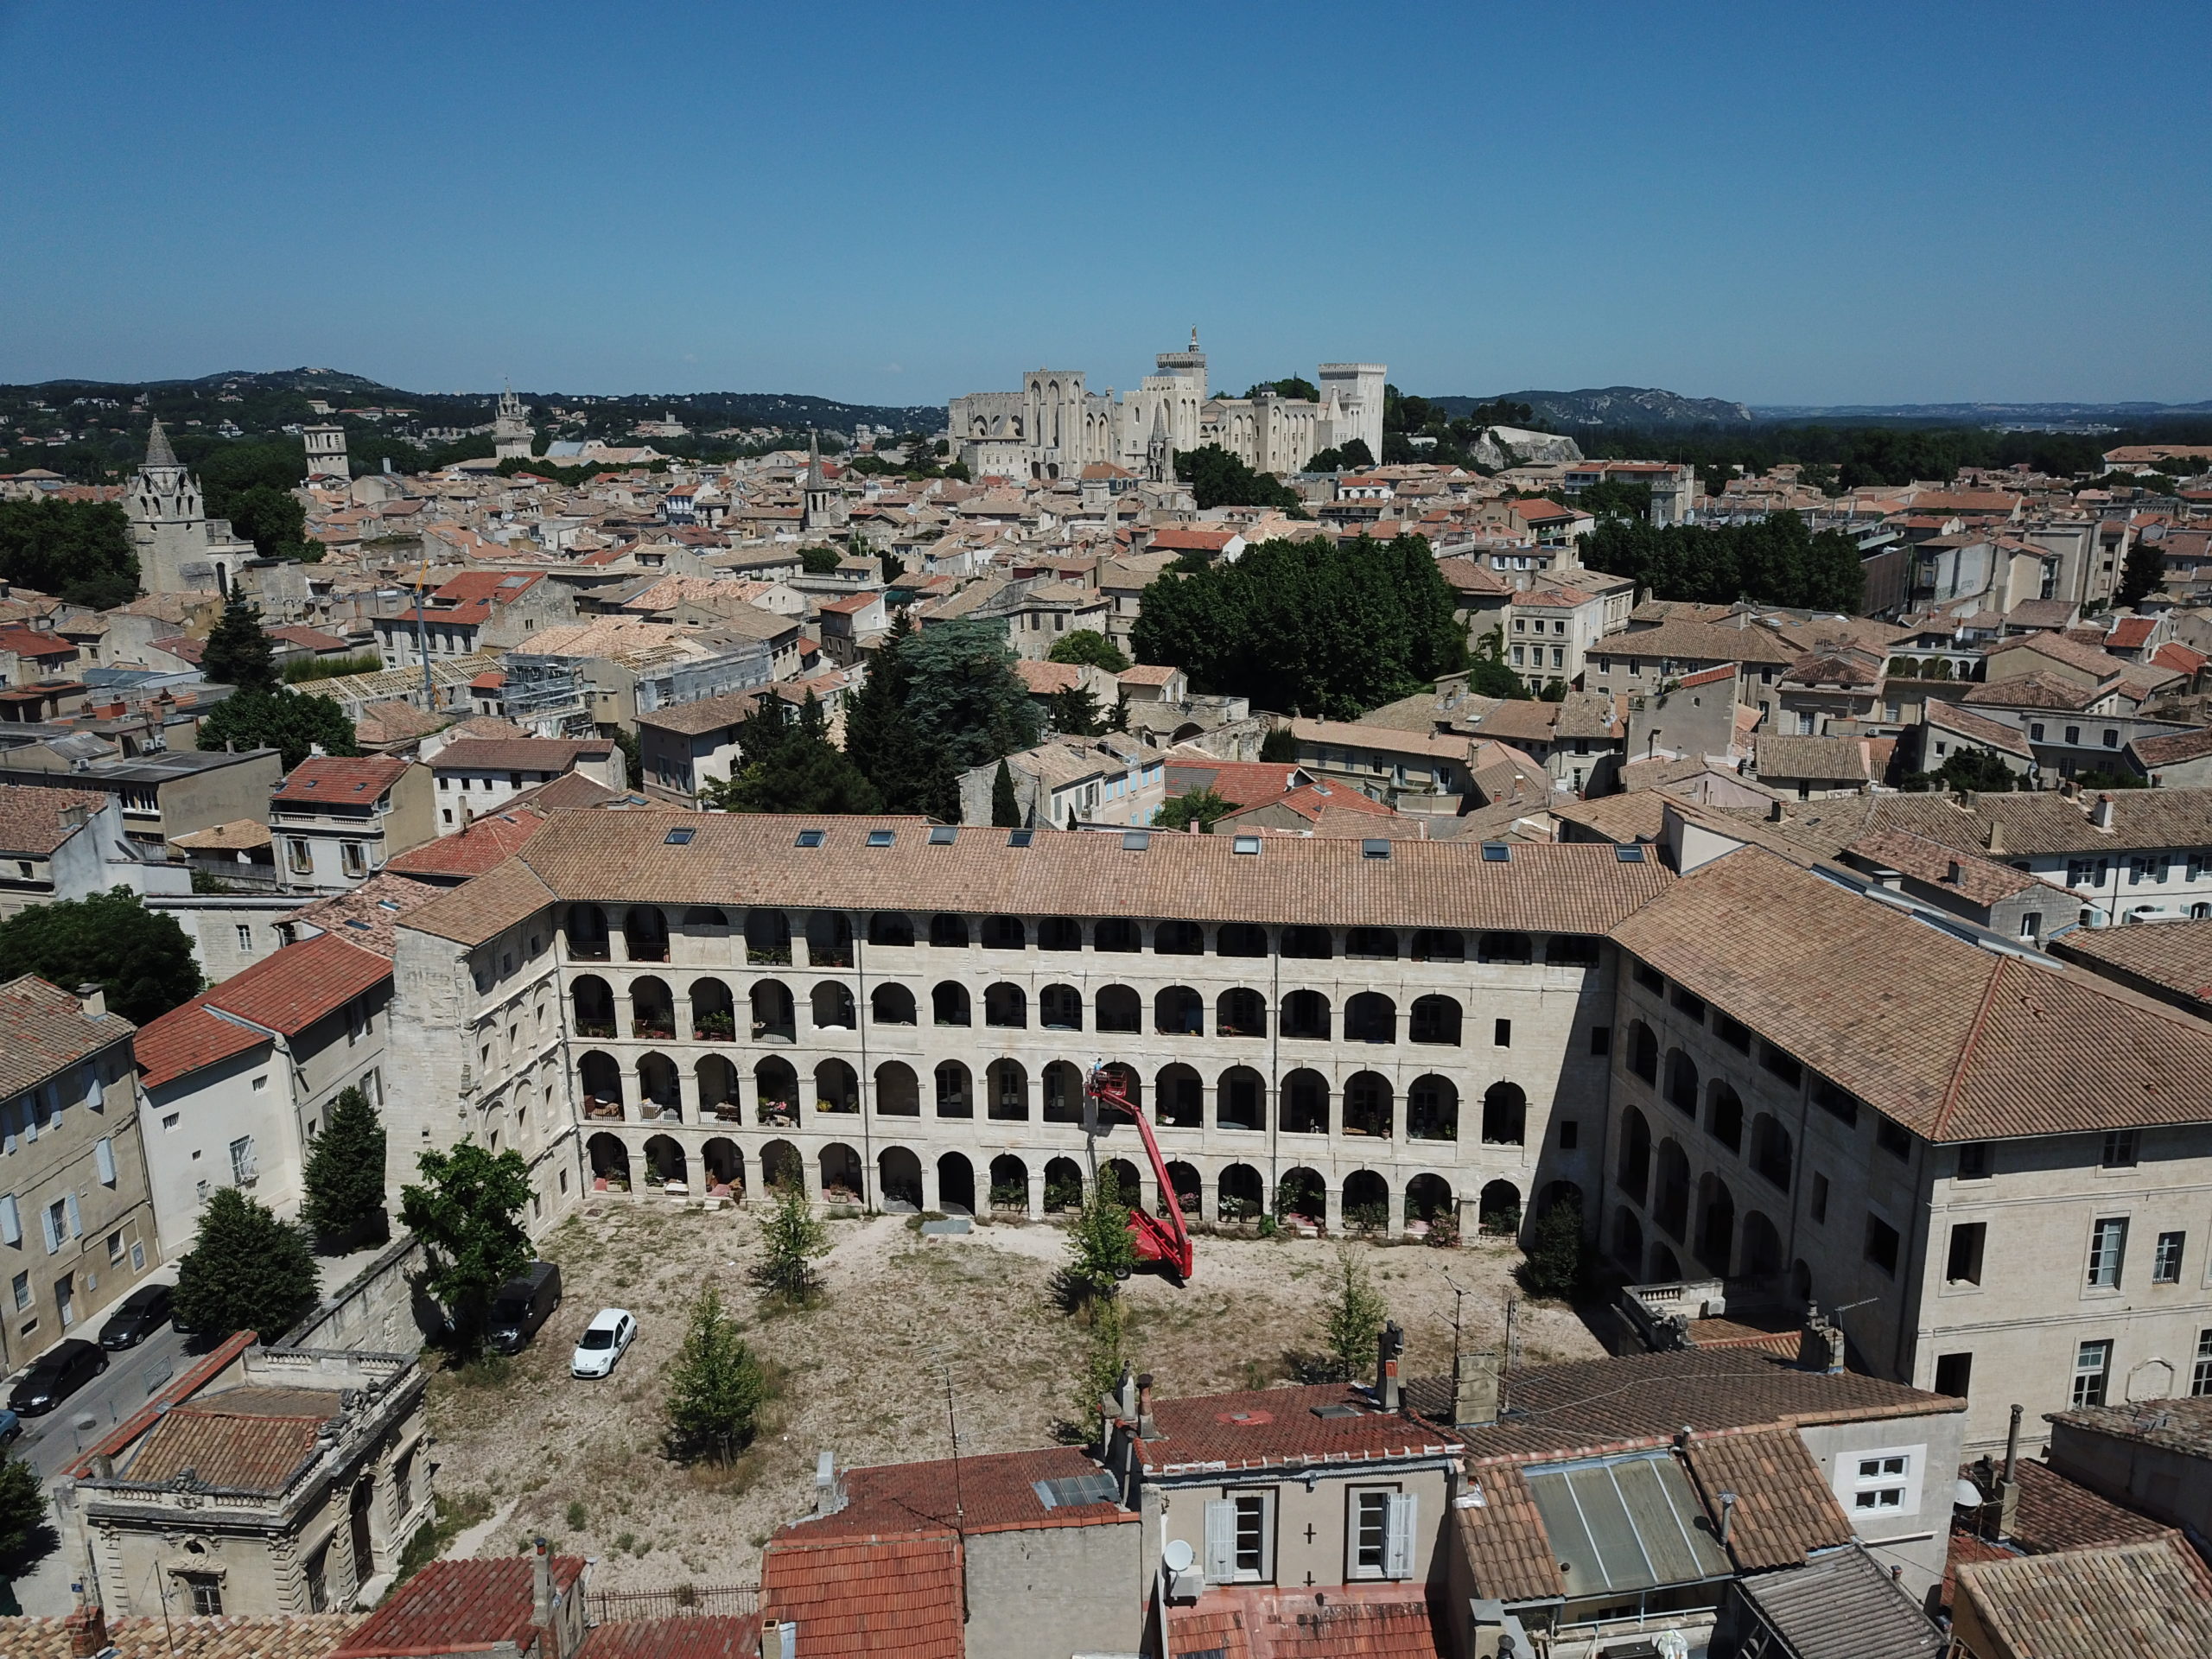 Caserne des passagers - Avignon